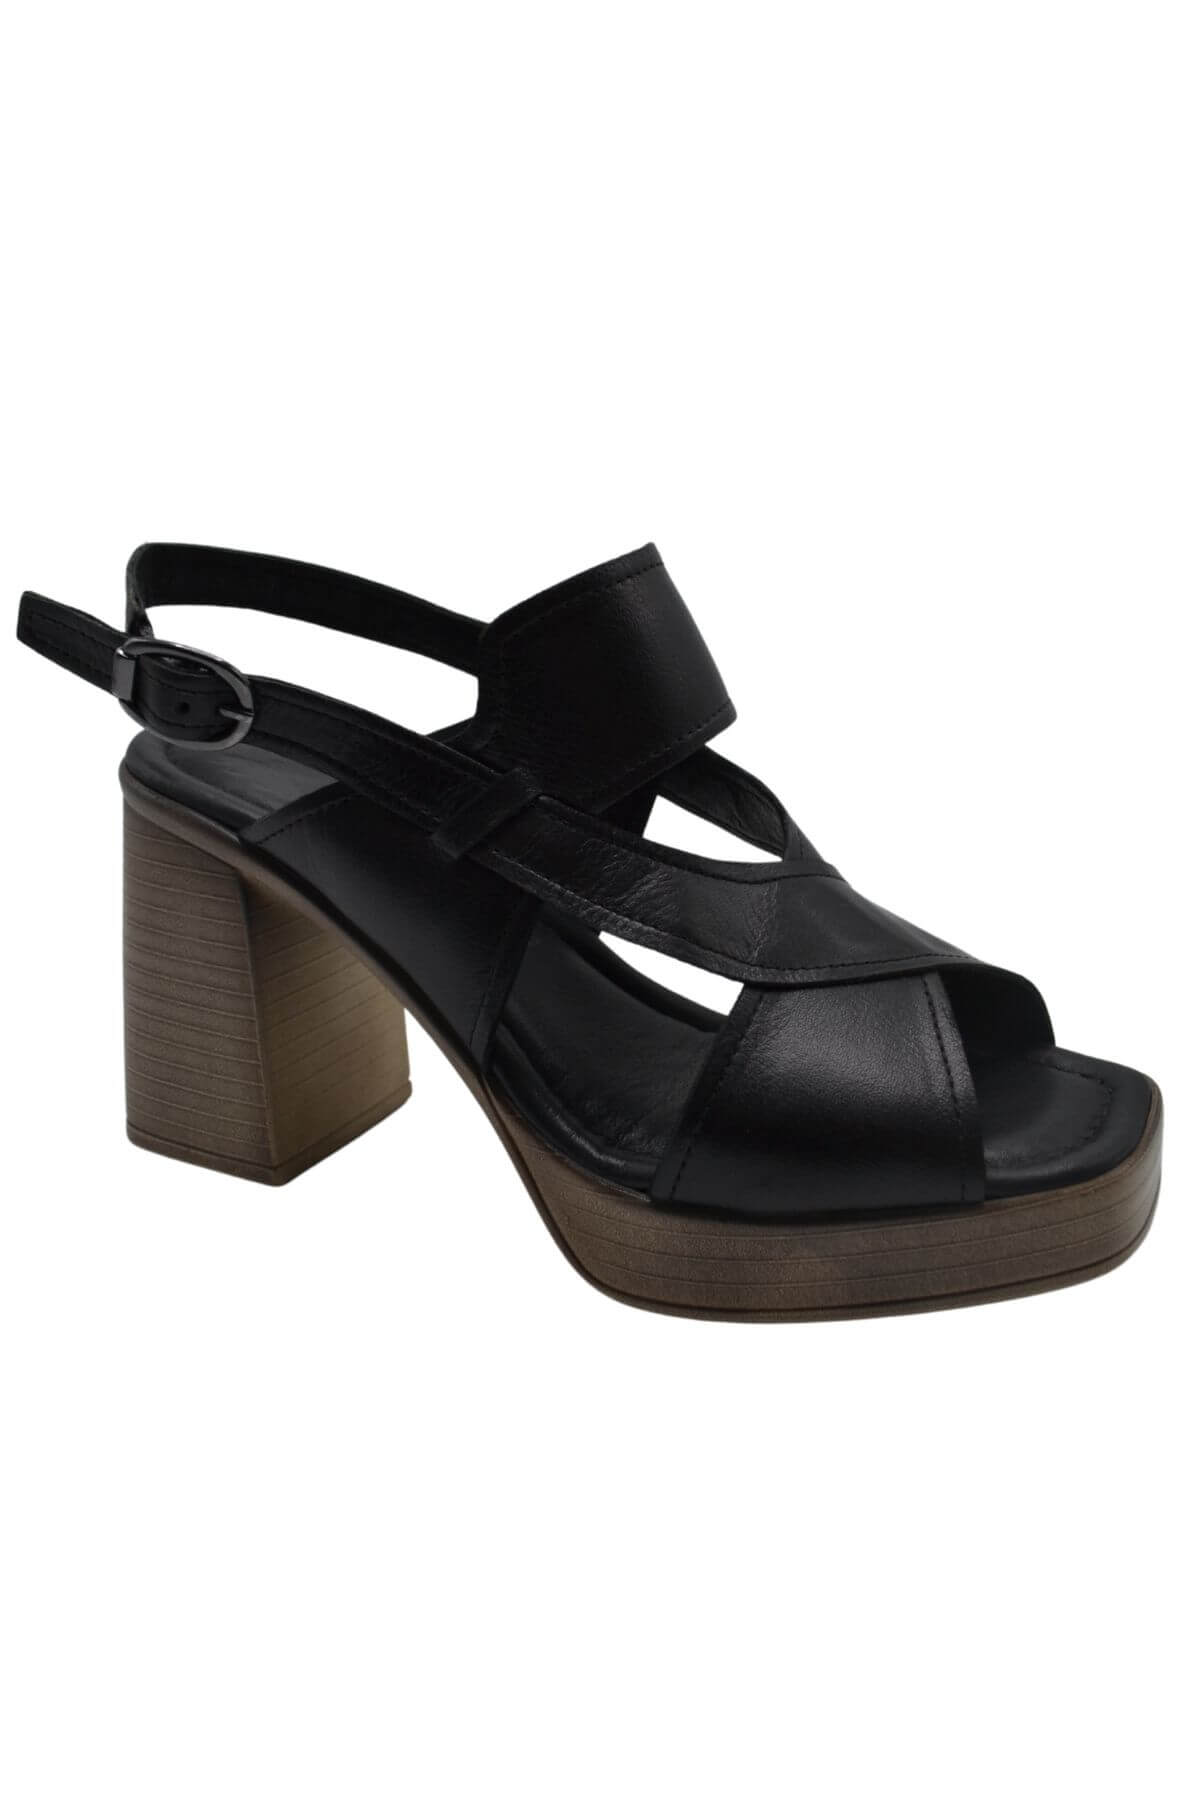 Kadın Topuklu Deri Sandalet Siyah 2313202Y